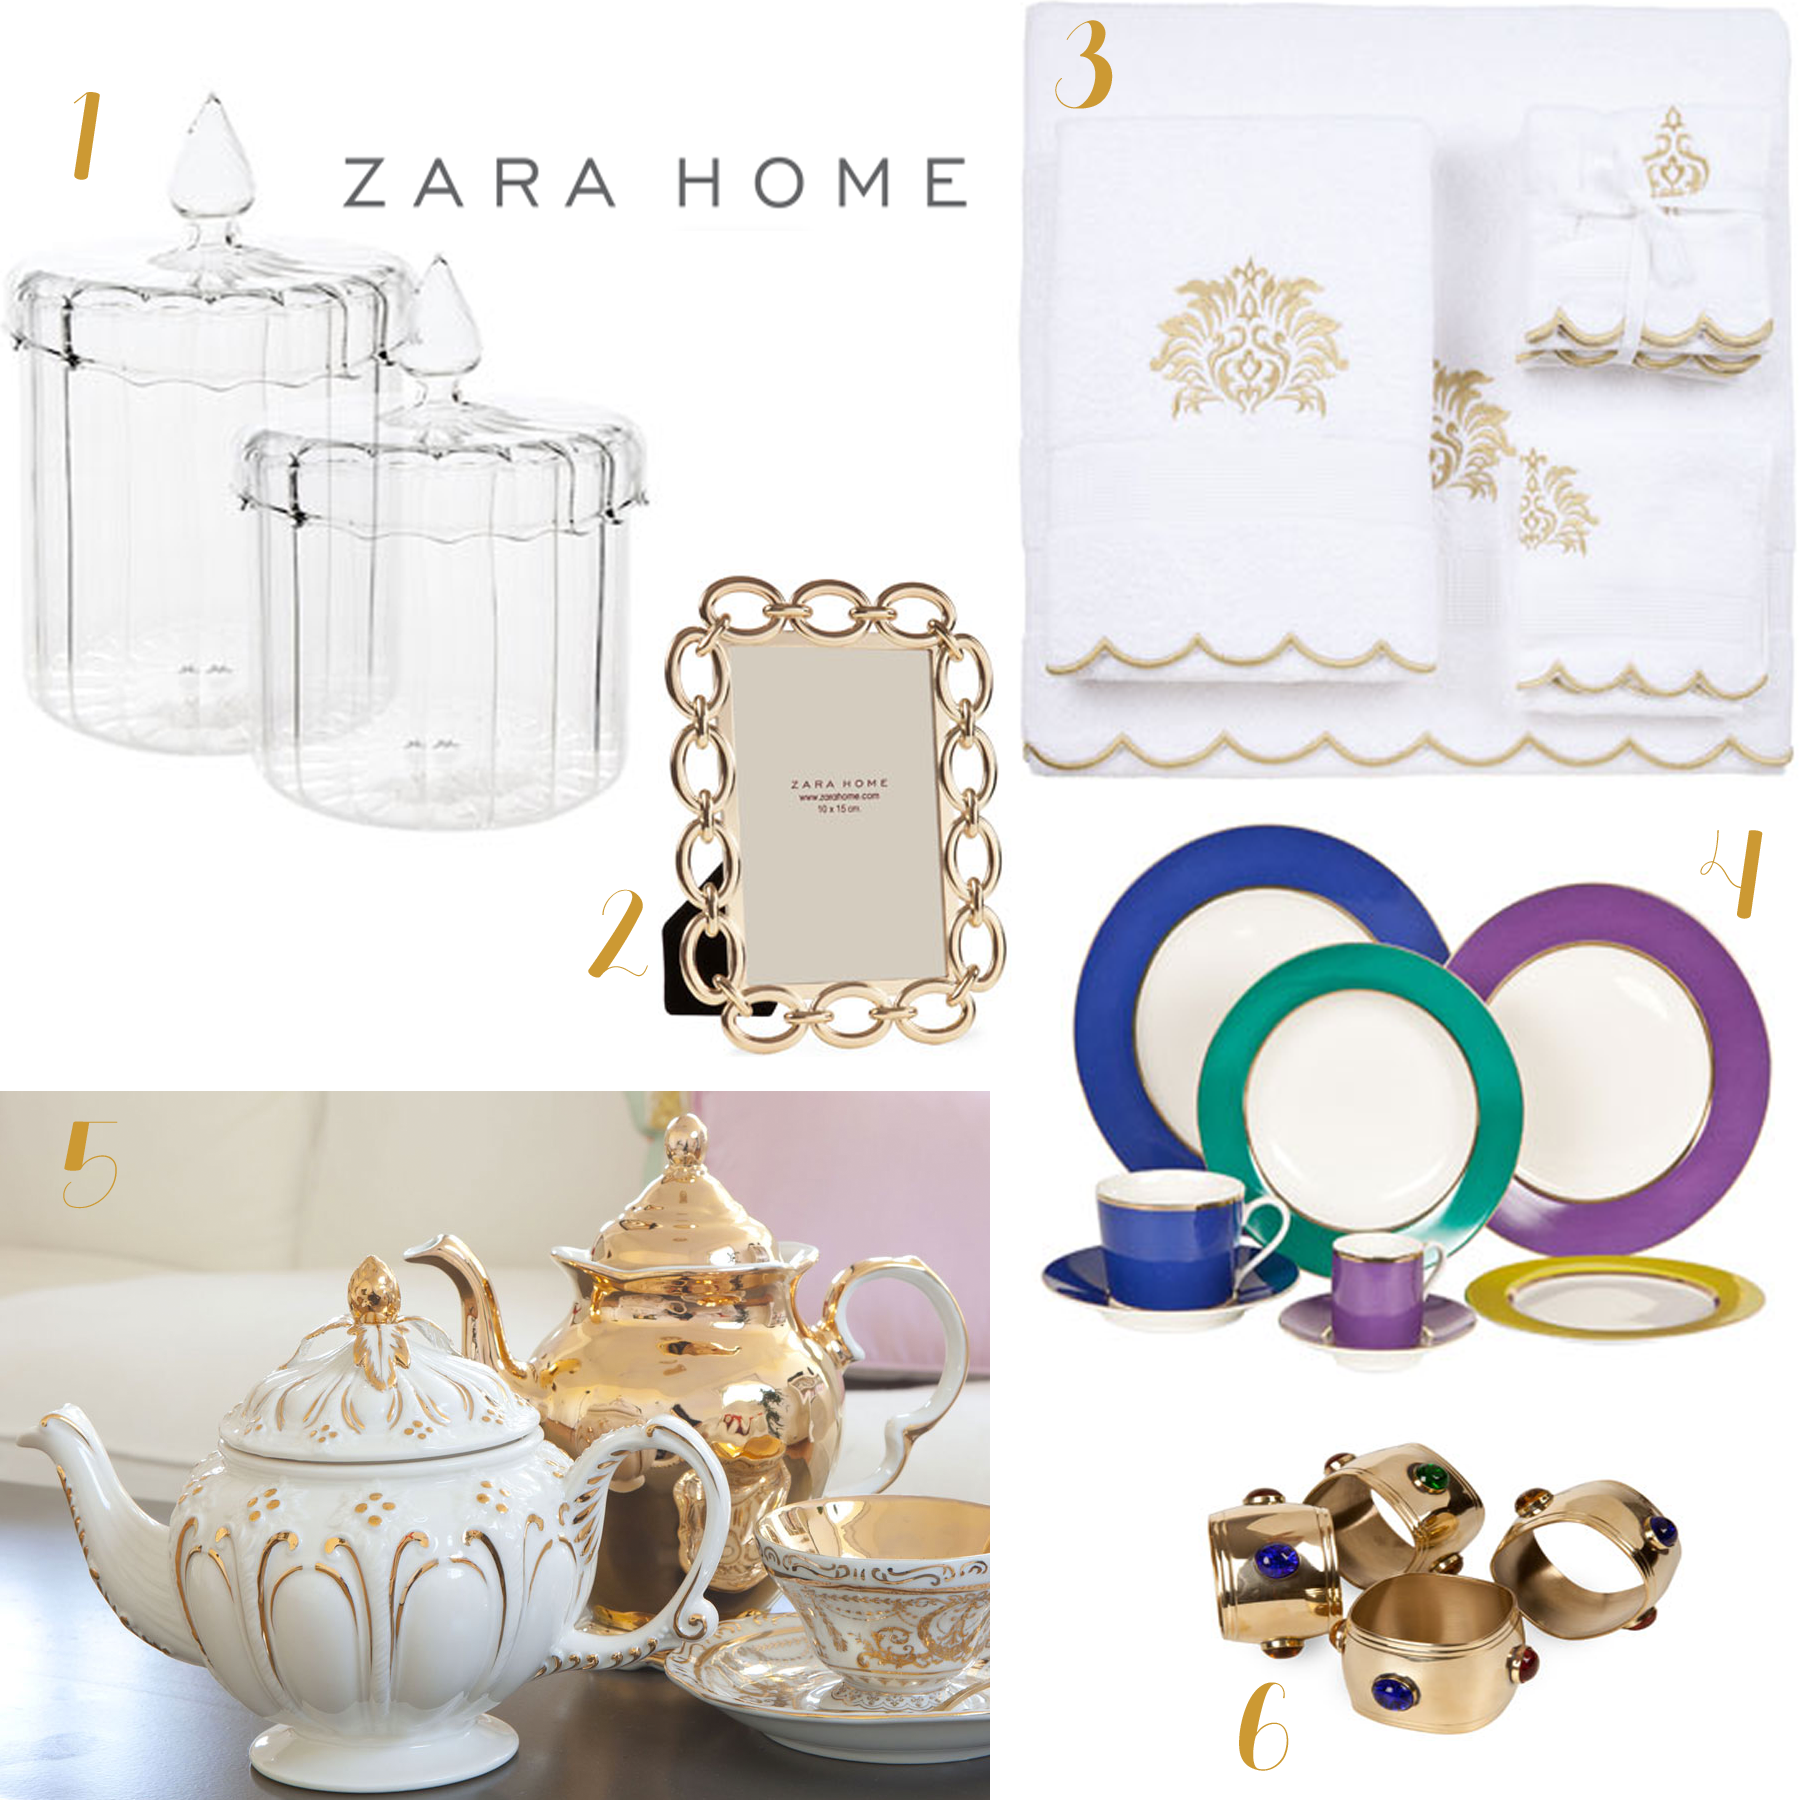 zara home order online